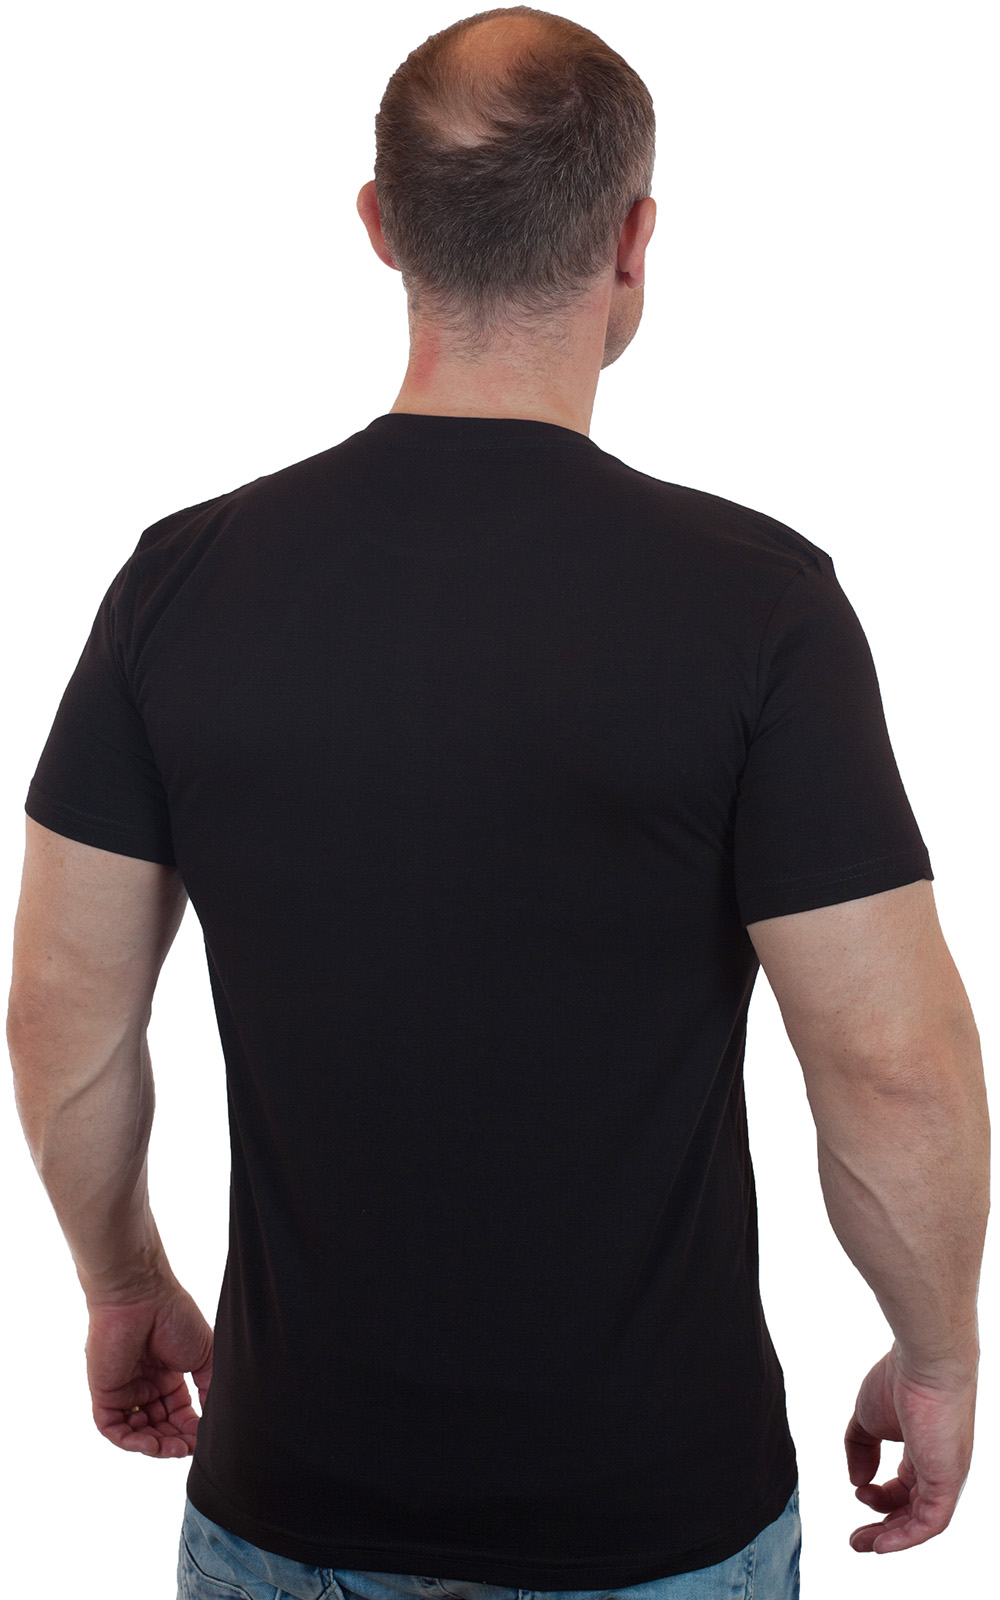 Купить строгую черную футболку ВДВ онлайн выгодно